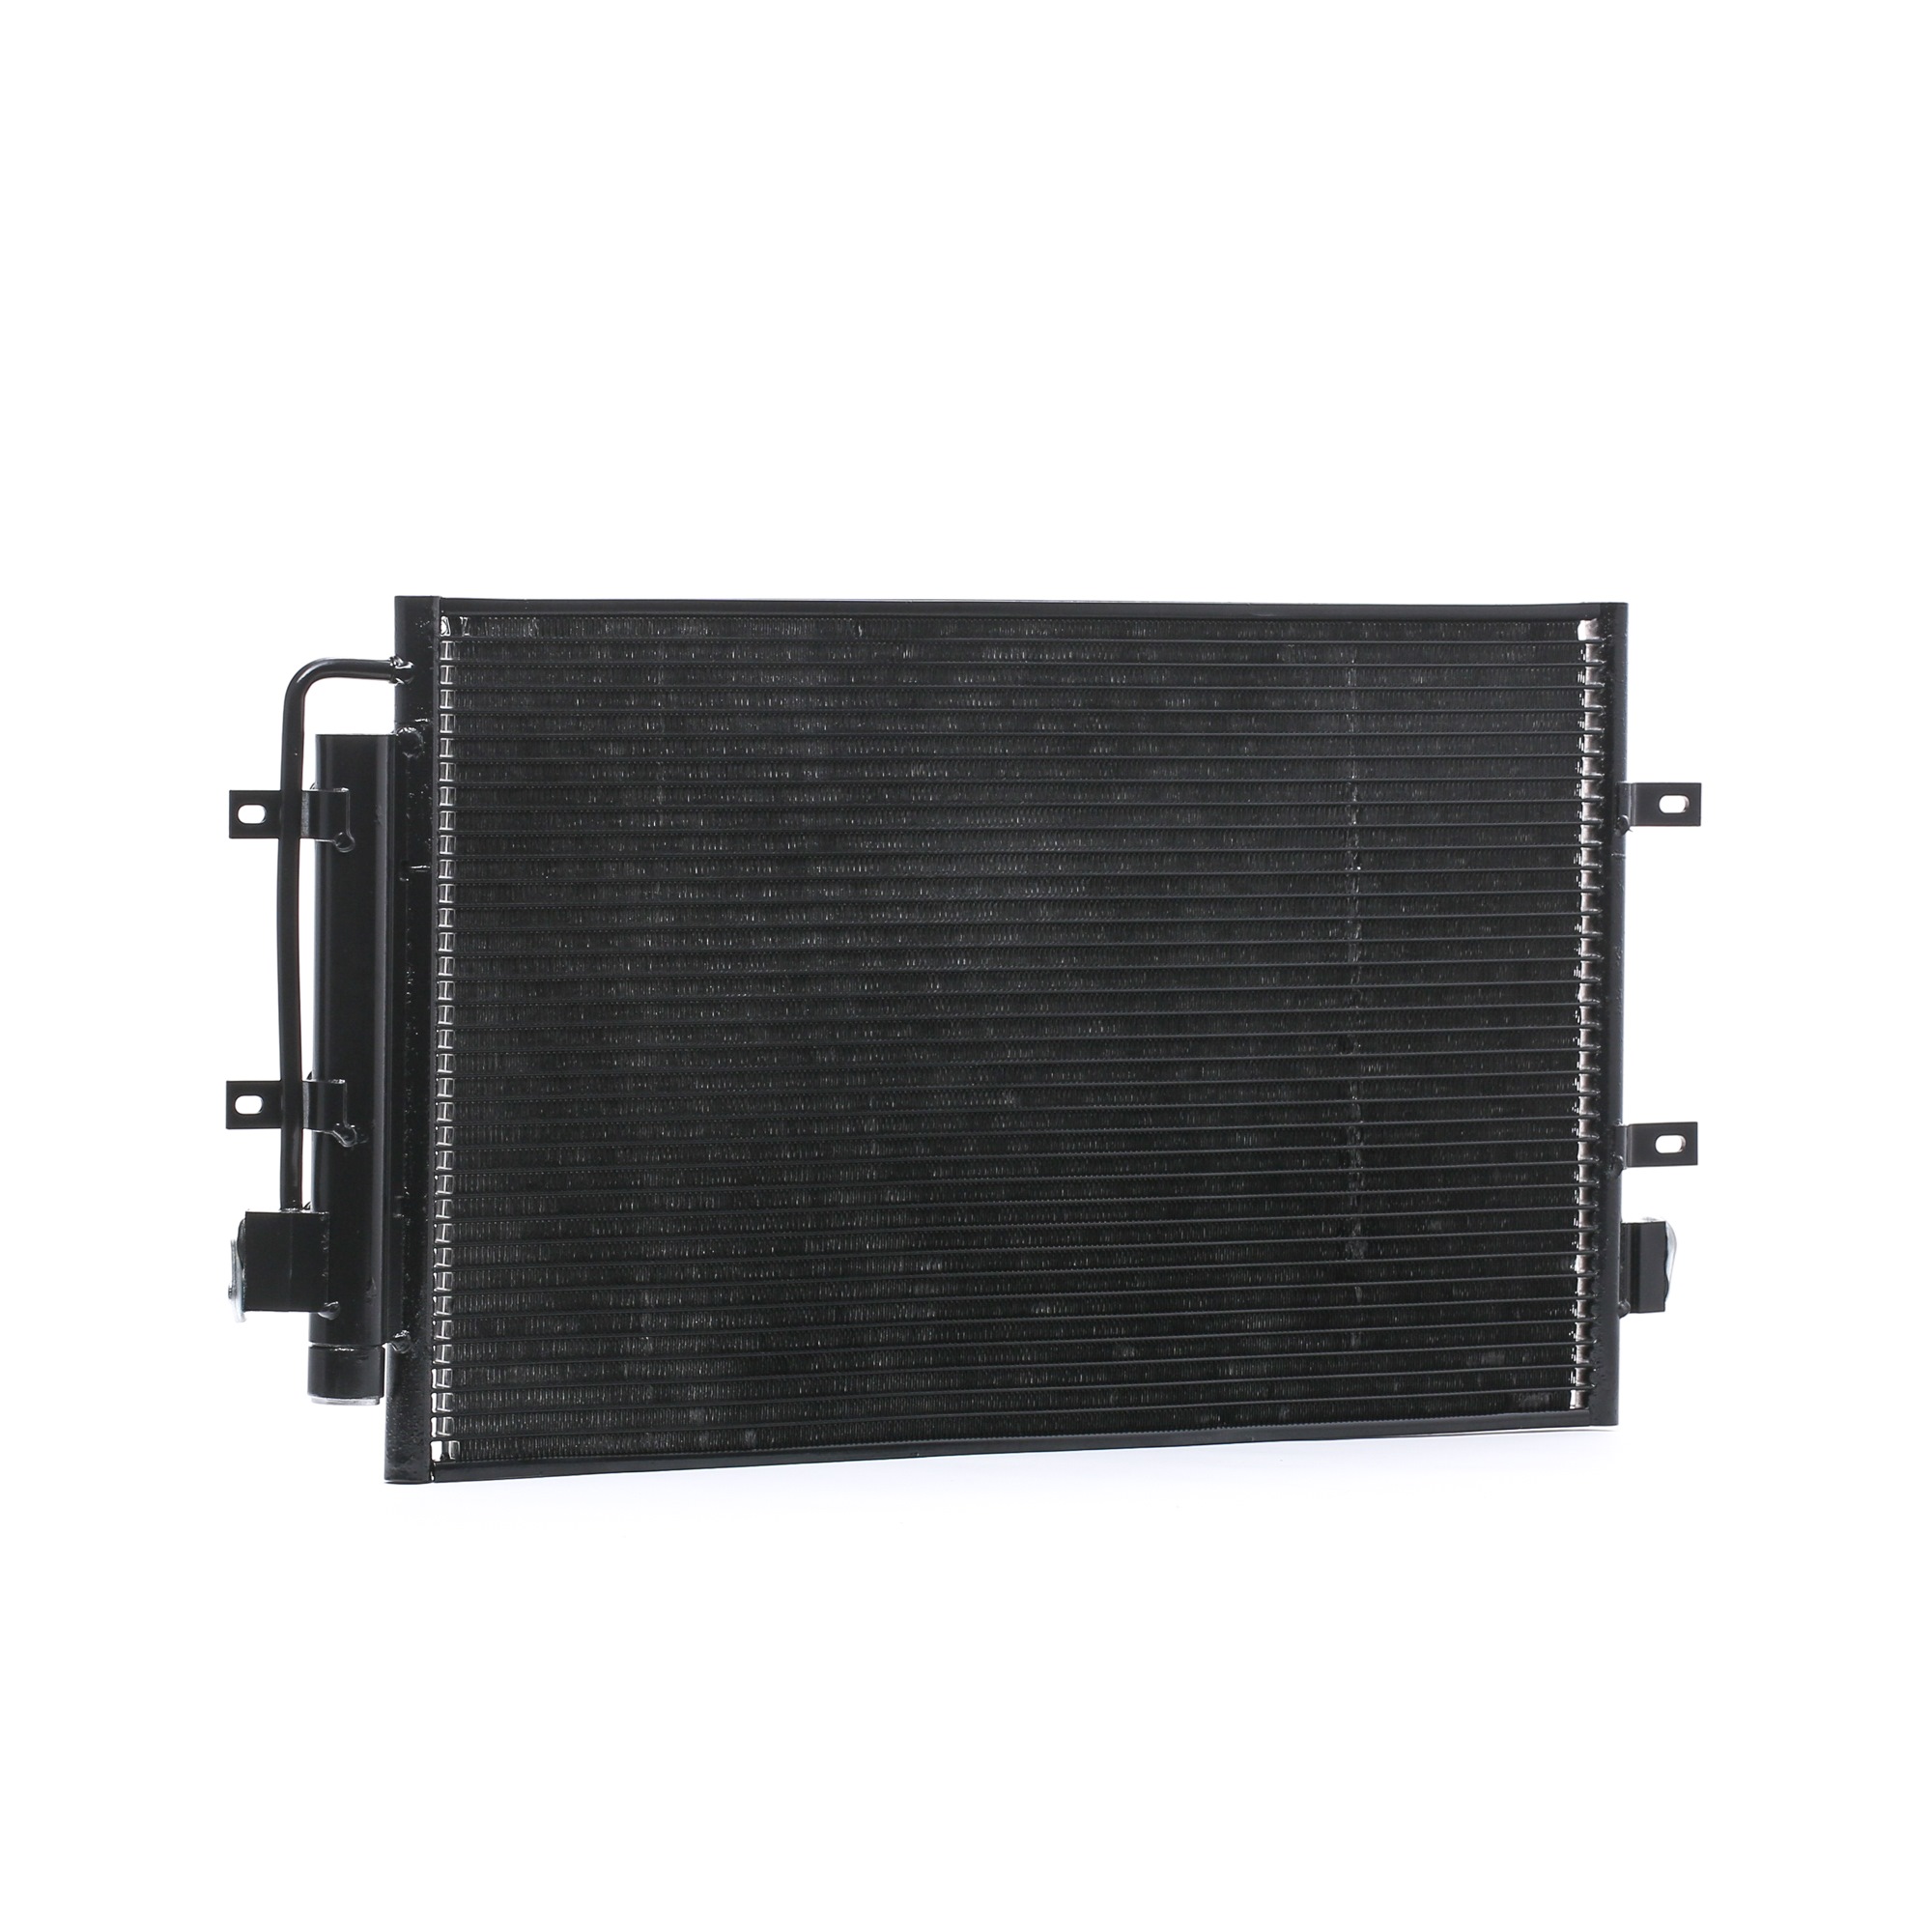 RIDEX 448C0257 Air conditioning condenser with dryer, 603 x 350 x 16 mm, Aluminium